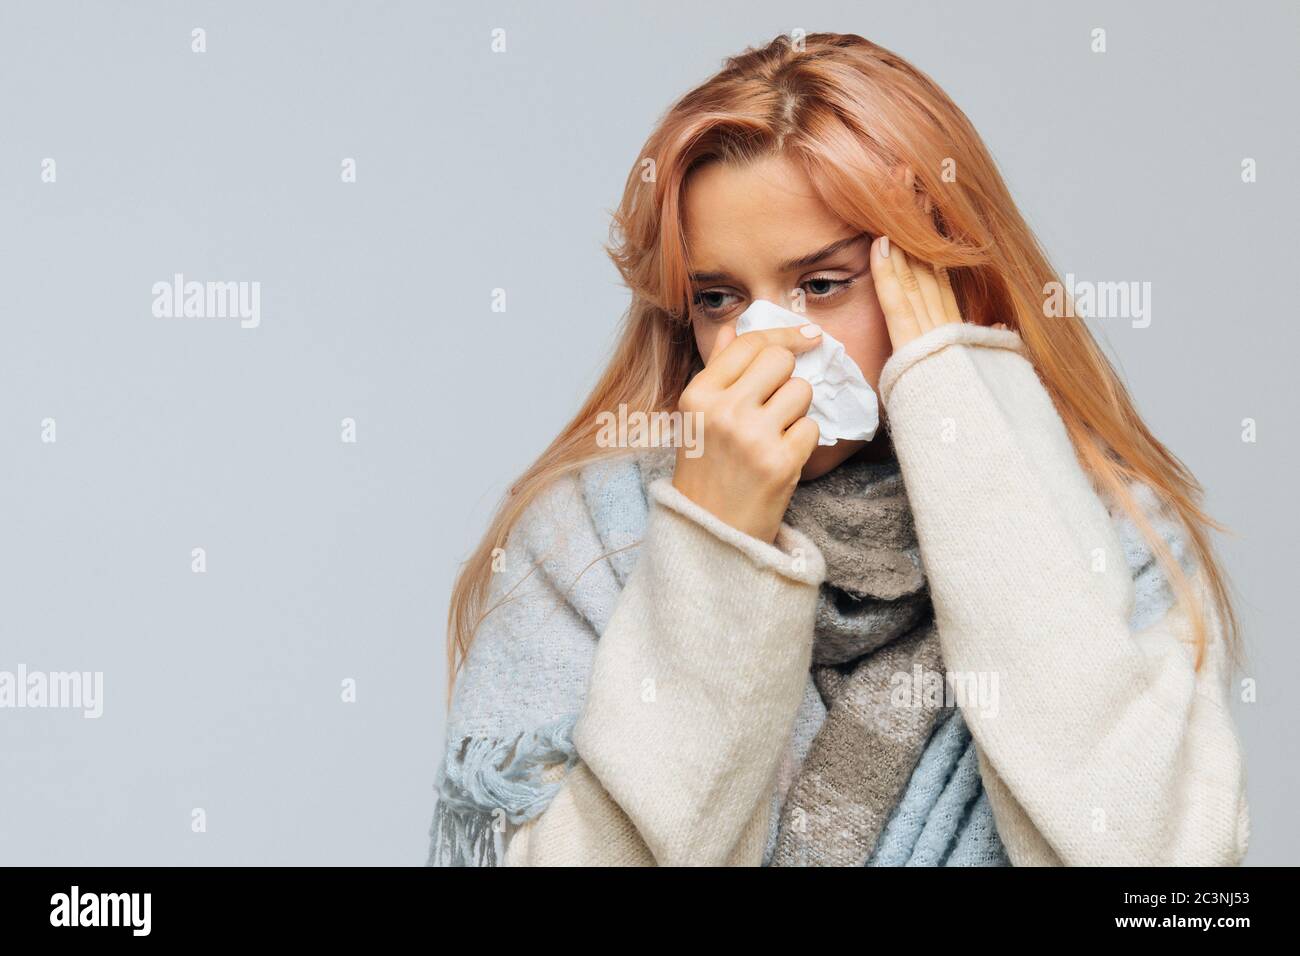 Jolie petite femme malade avec des cheveux blonds fraise enveloppés dans une écharpe chaude avec nez soufflant de serviette, se sent mal, ayant des maux de tête, touchant son front Banque D'Images